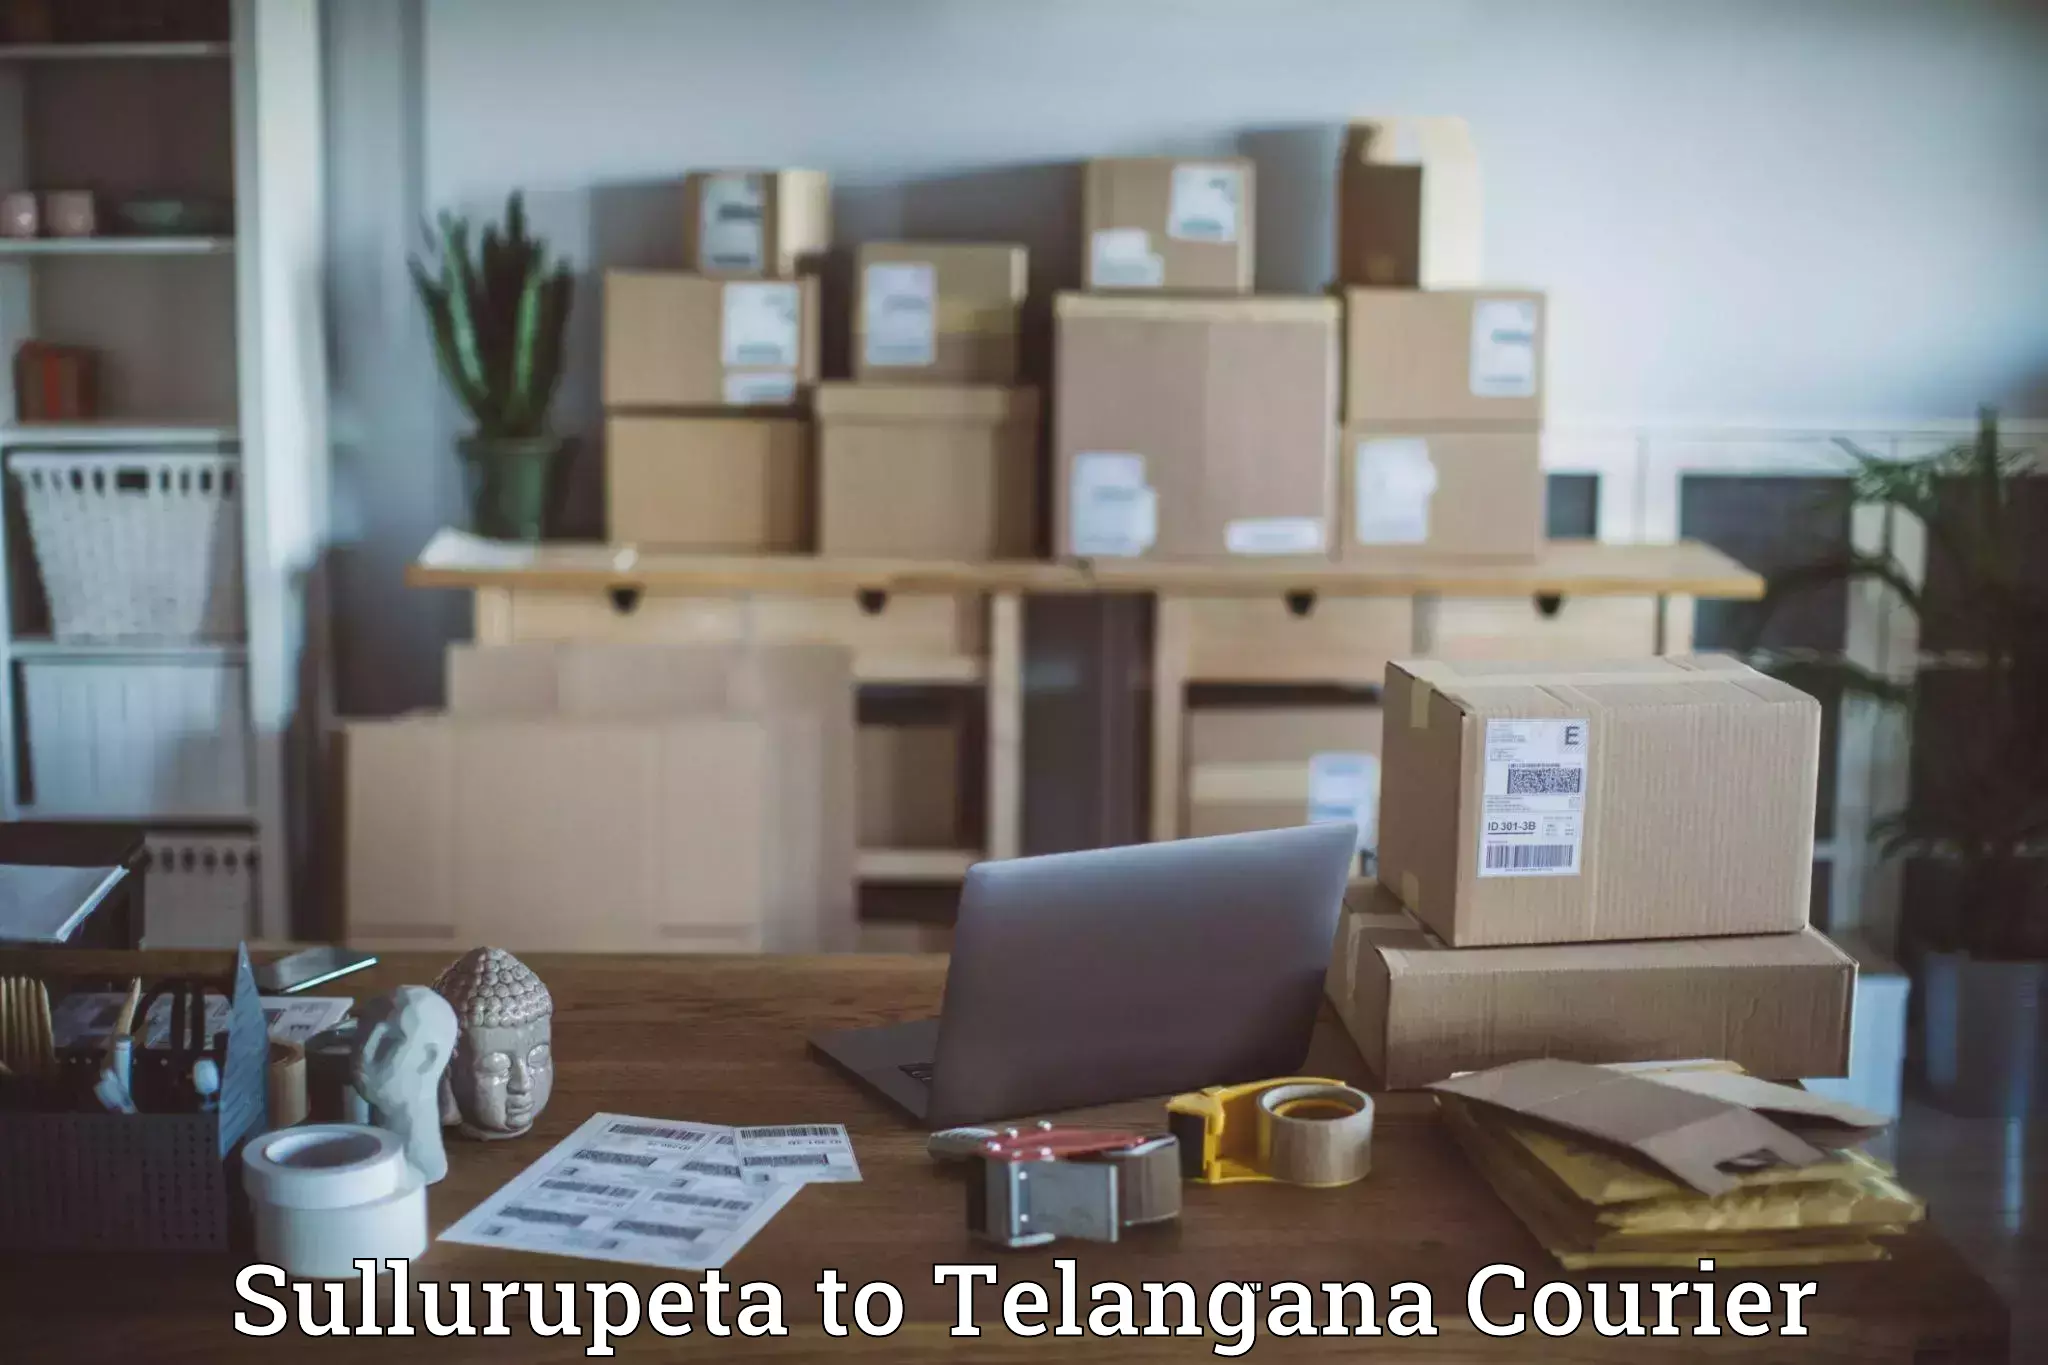 Express mail solutions Sullurupeta to Manuguru